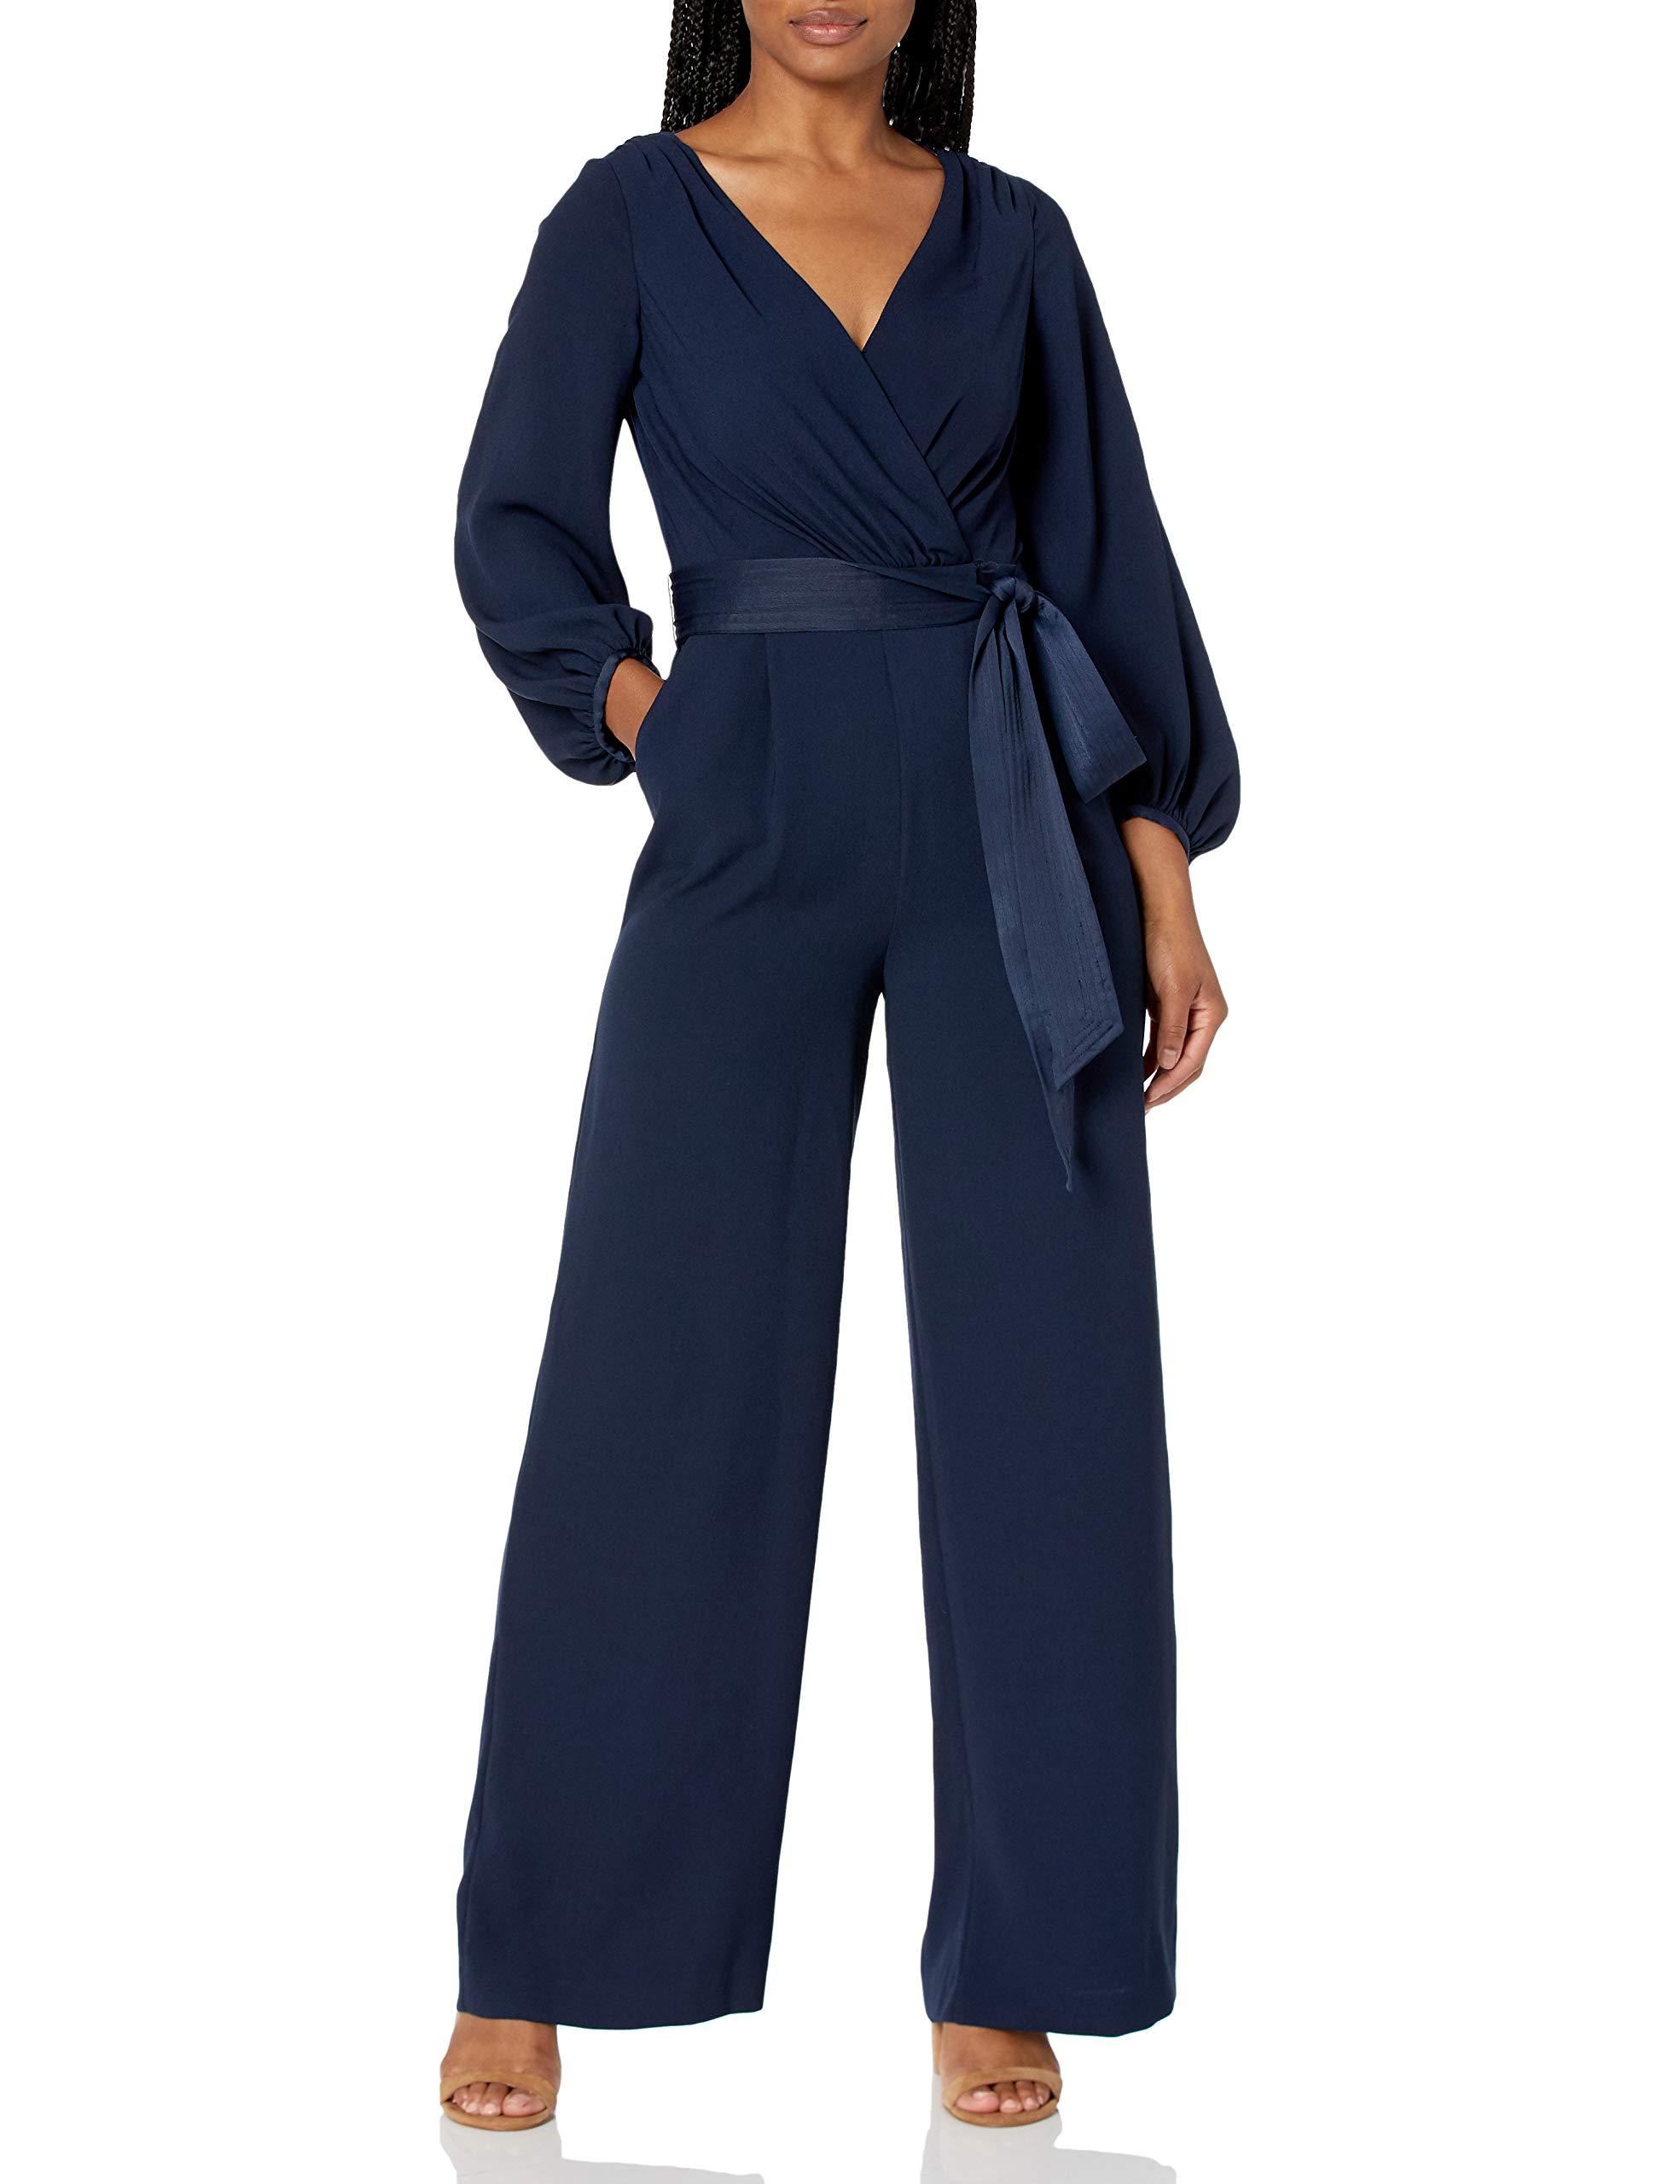 Eliza J Faux Wrap Long Sleeve Jumpsuit in Navy (Blue) - Lyst